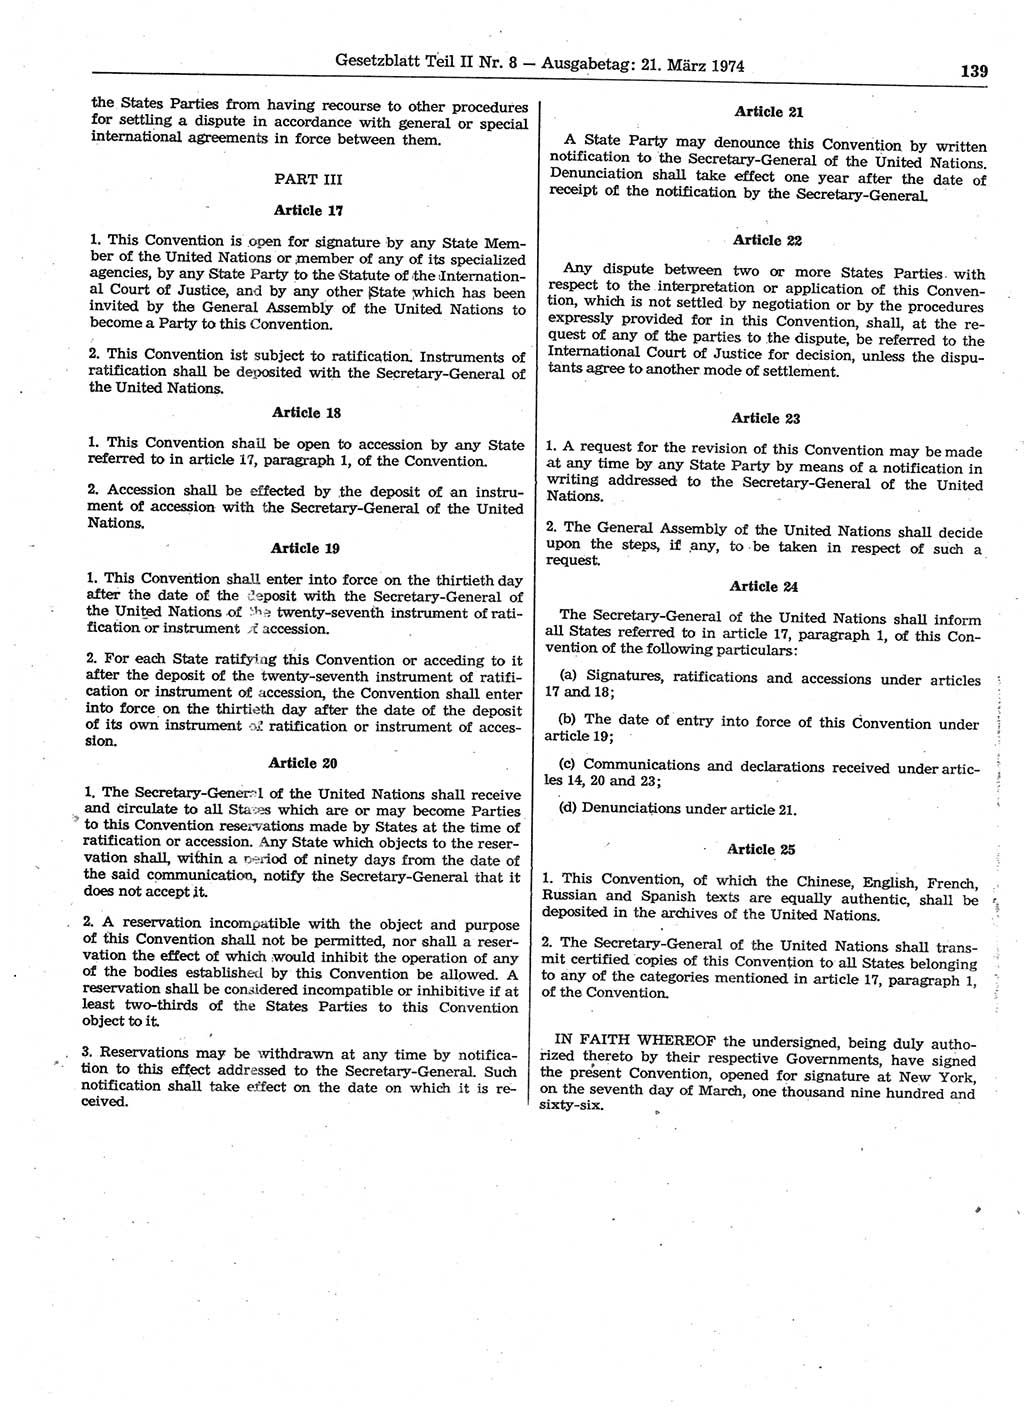 Gesetzblatt (GBl.) der Deutschen Demokratischen Republik (DDR) Teil ⅠⅠ 1974, Seite 139 (GBl. DDR ⅠⅠ 1974, S. 139)